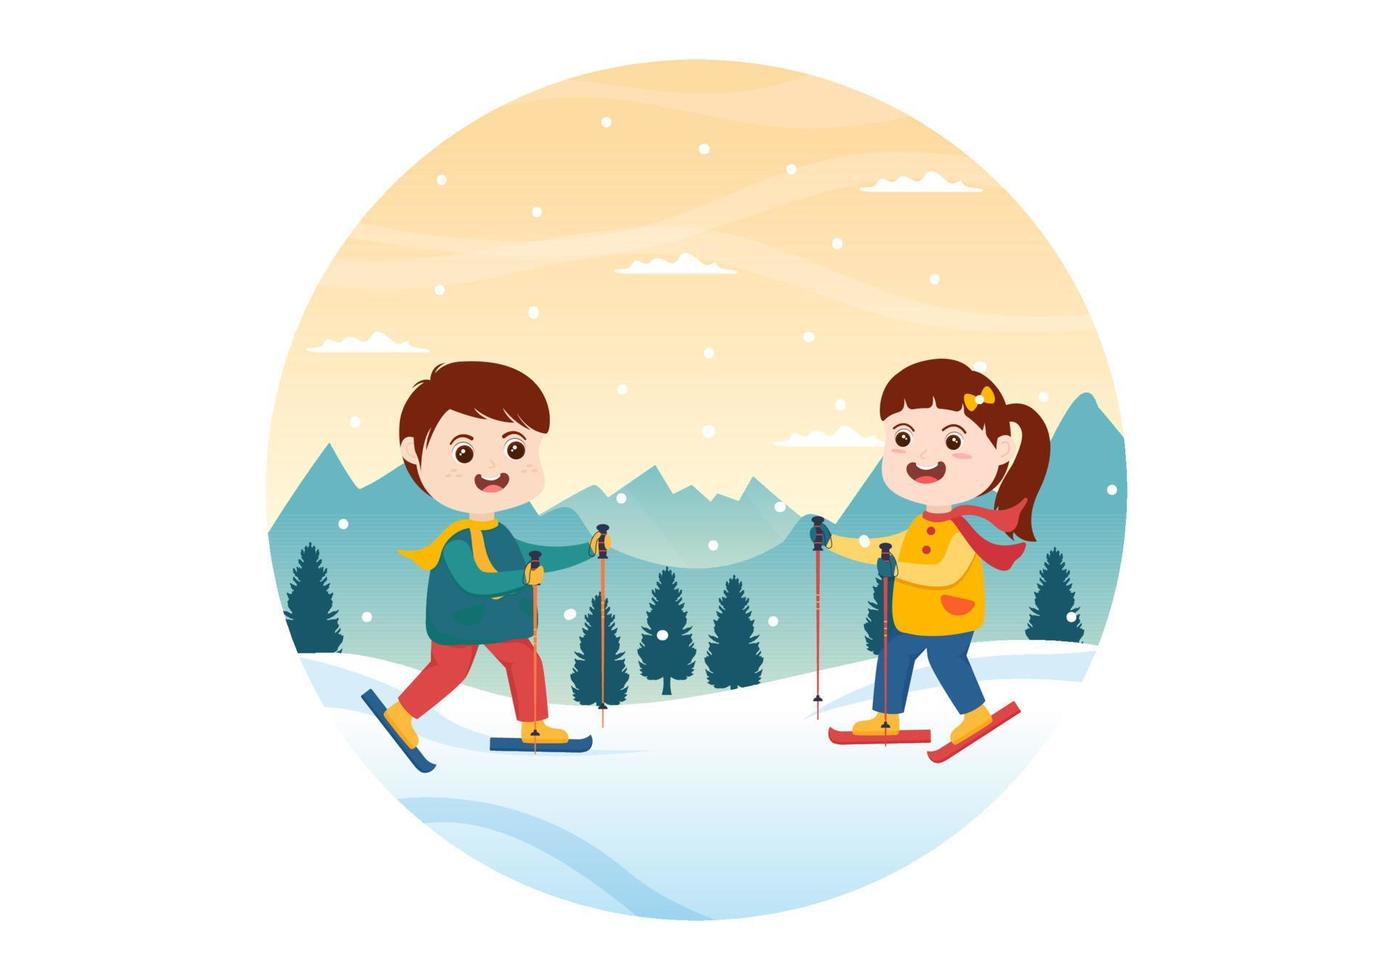 Snowboard handgezeichnete Cartoon-Flachillustration von Kindern im Winteroutfit, die mit Snowboards an schneebedeckten Berghängen oder Hängen rutschen und springen vektor